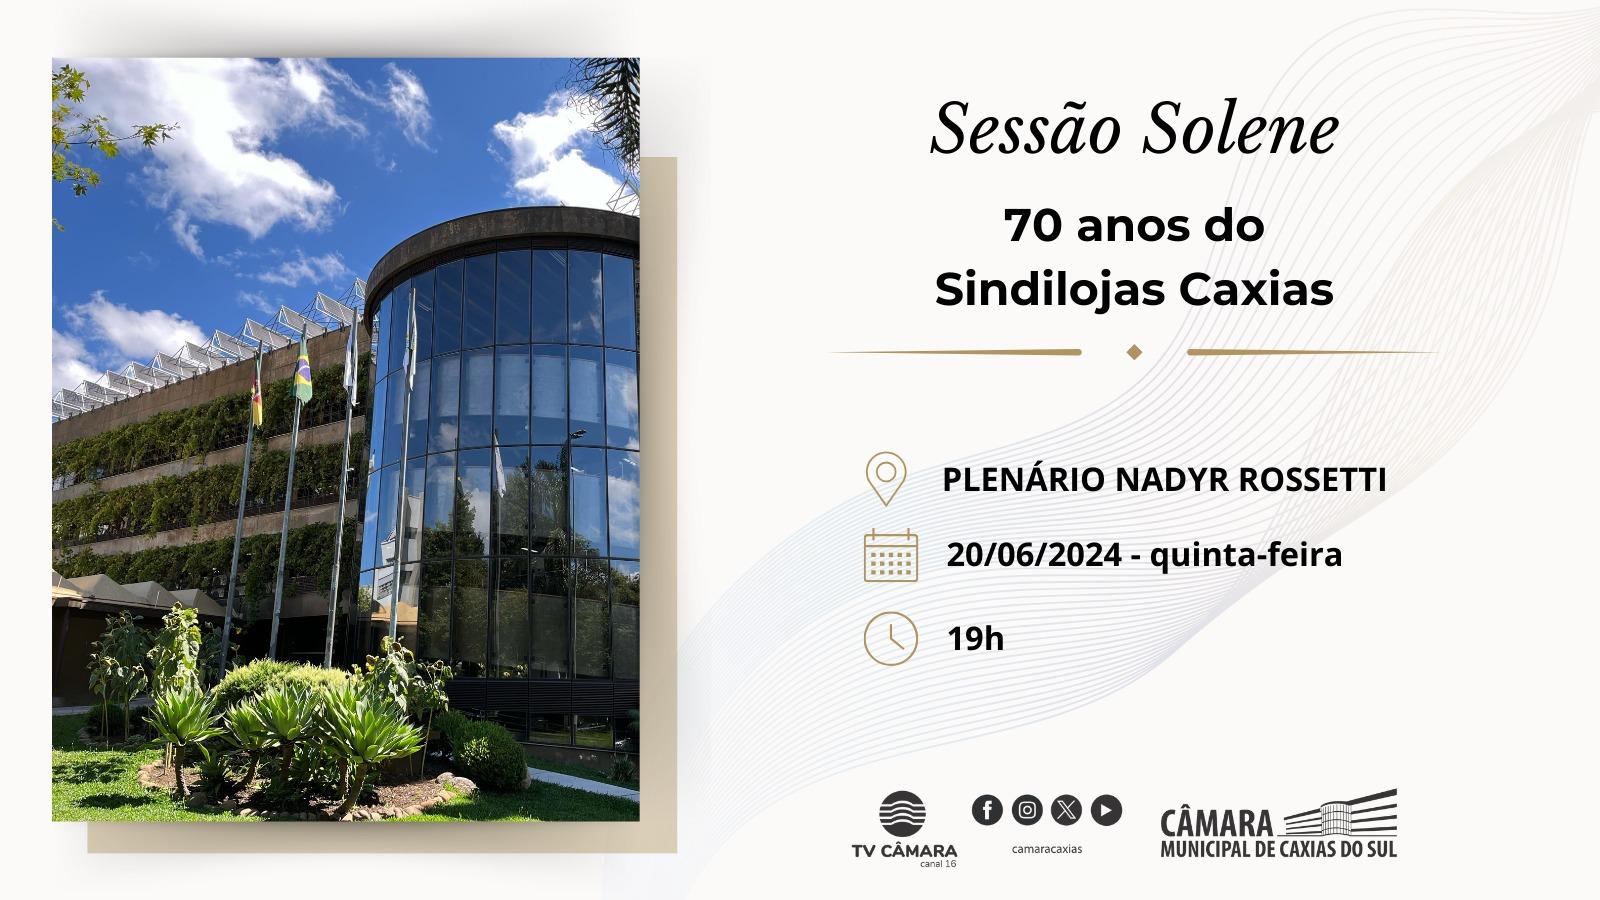 Câmara Municipal celebrará os 70 anos do Sindilojas Caxias nesta quinta-feira